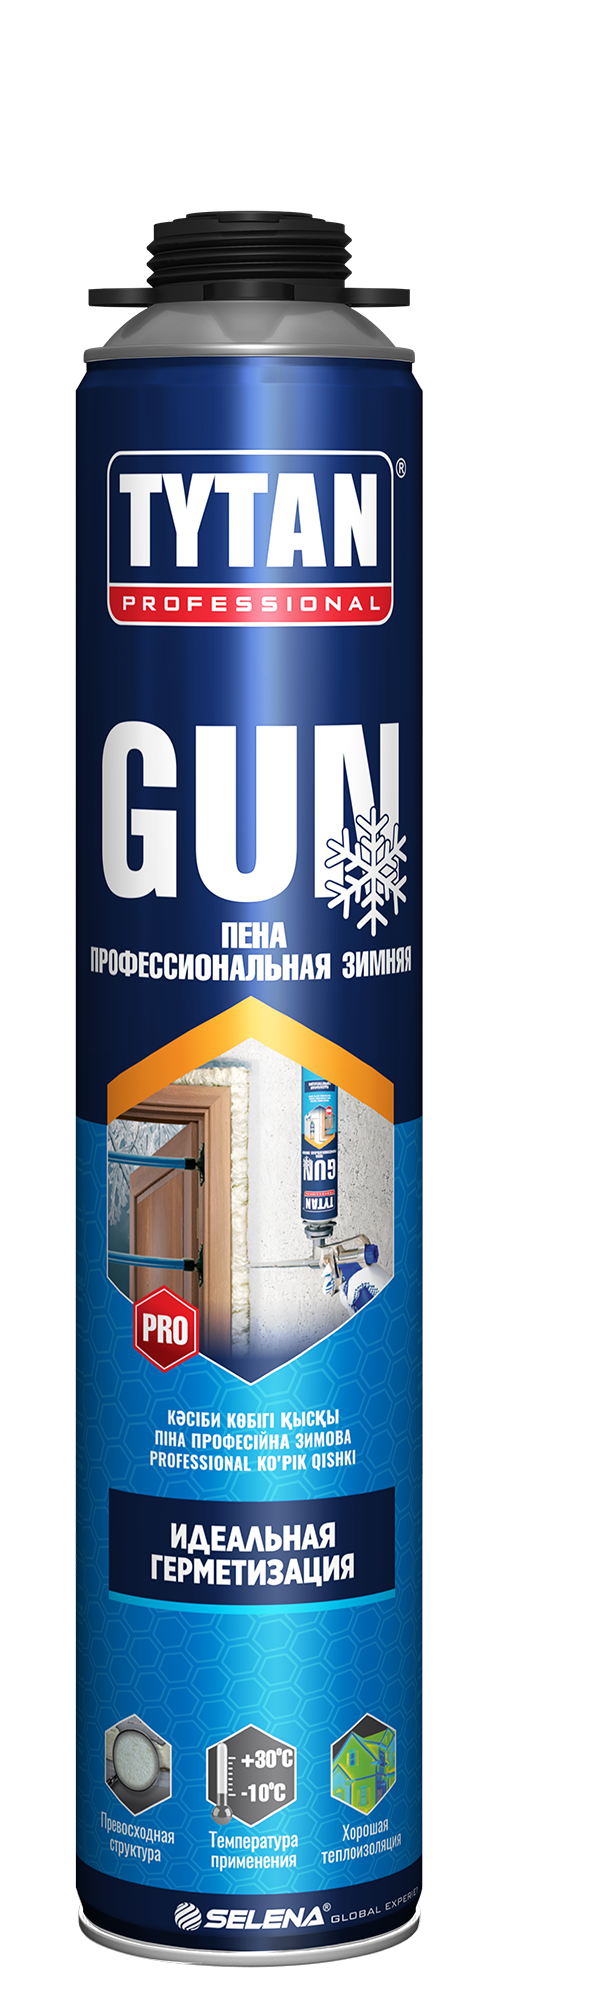 Пена Tytan GUN профессиональная (зима). 750мл